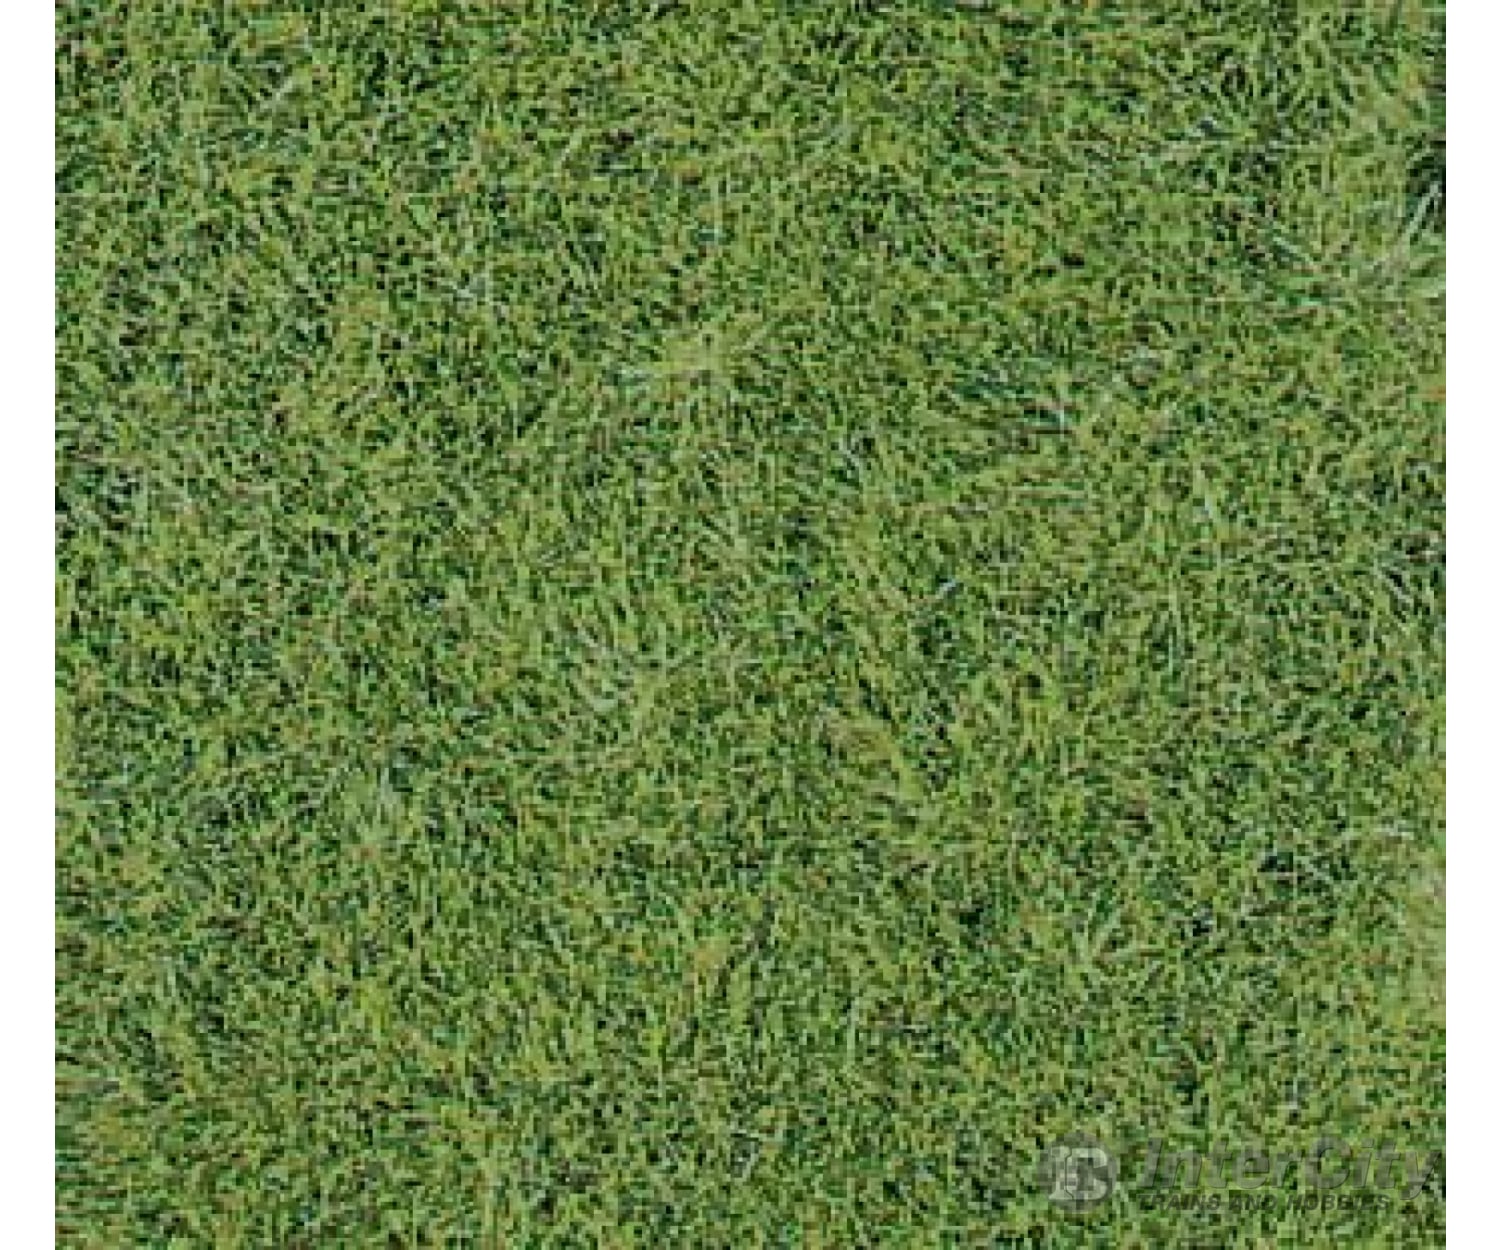 Heki 1870 Wild Grass Mat -- Meadow Green 15-3/4 X 9-7/16 40 24Cm Pkg(2) & Scenery Mats